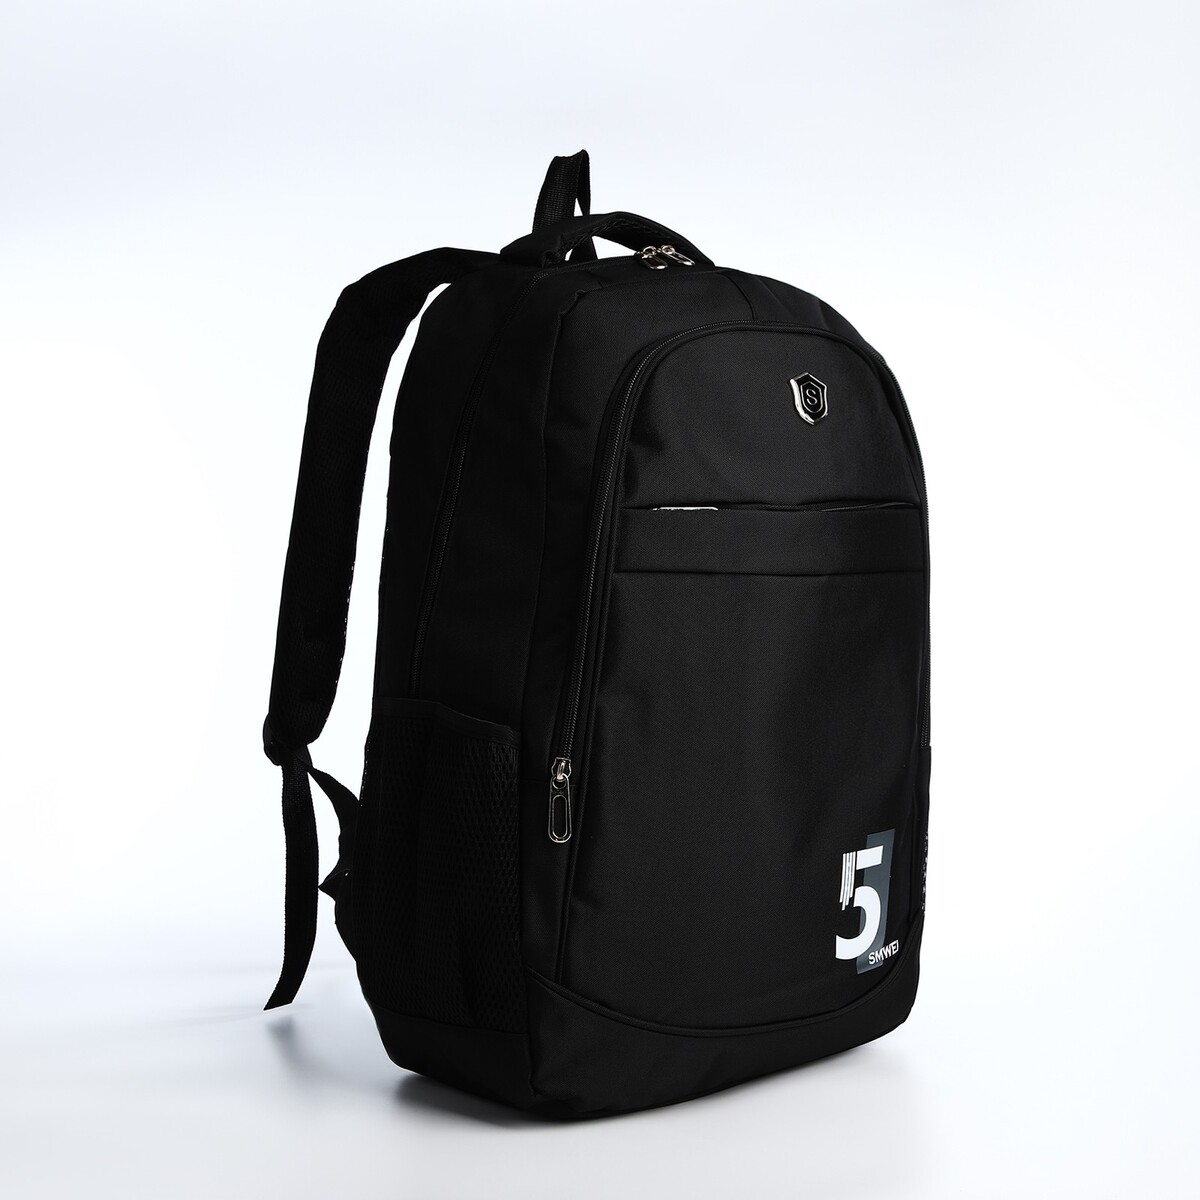 Рюкзак молодежный из текстиля на молнии, 4 кармана, цвет черный/серый